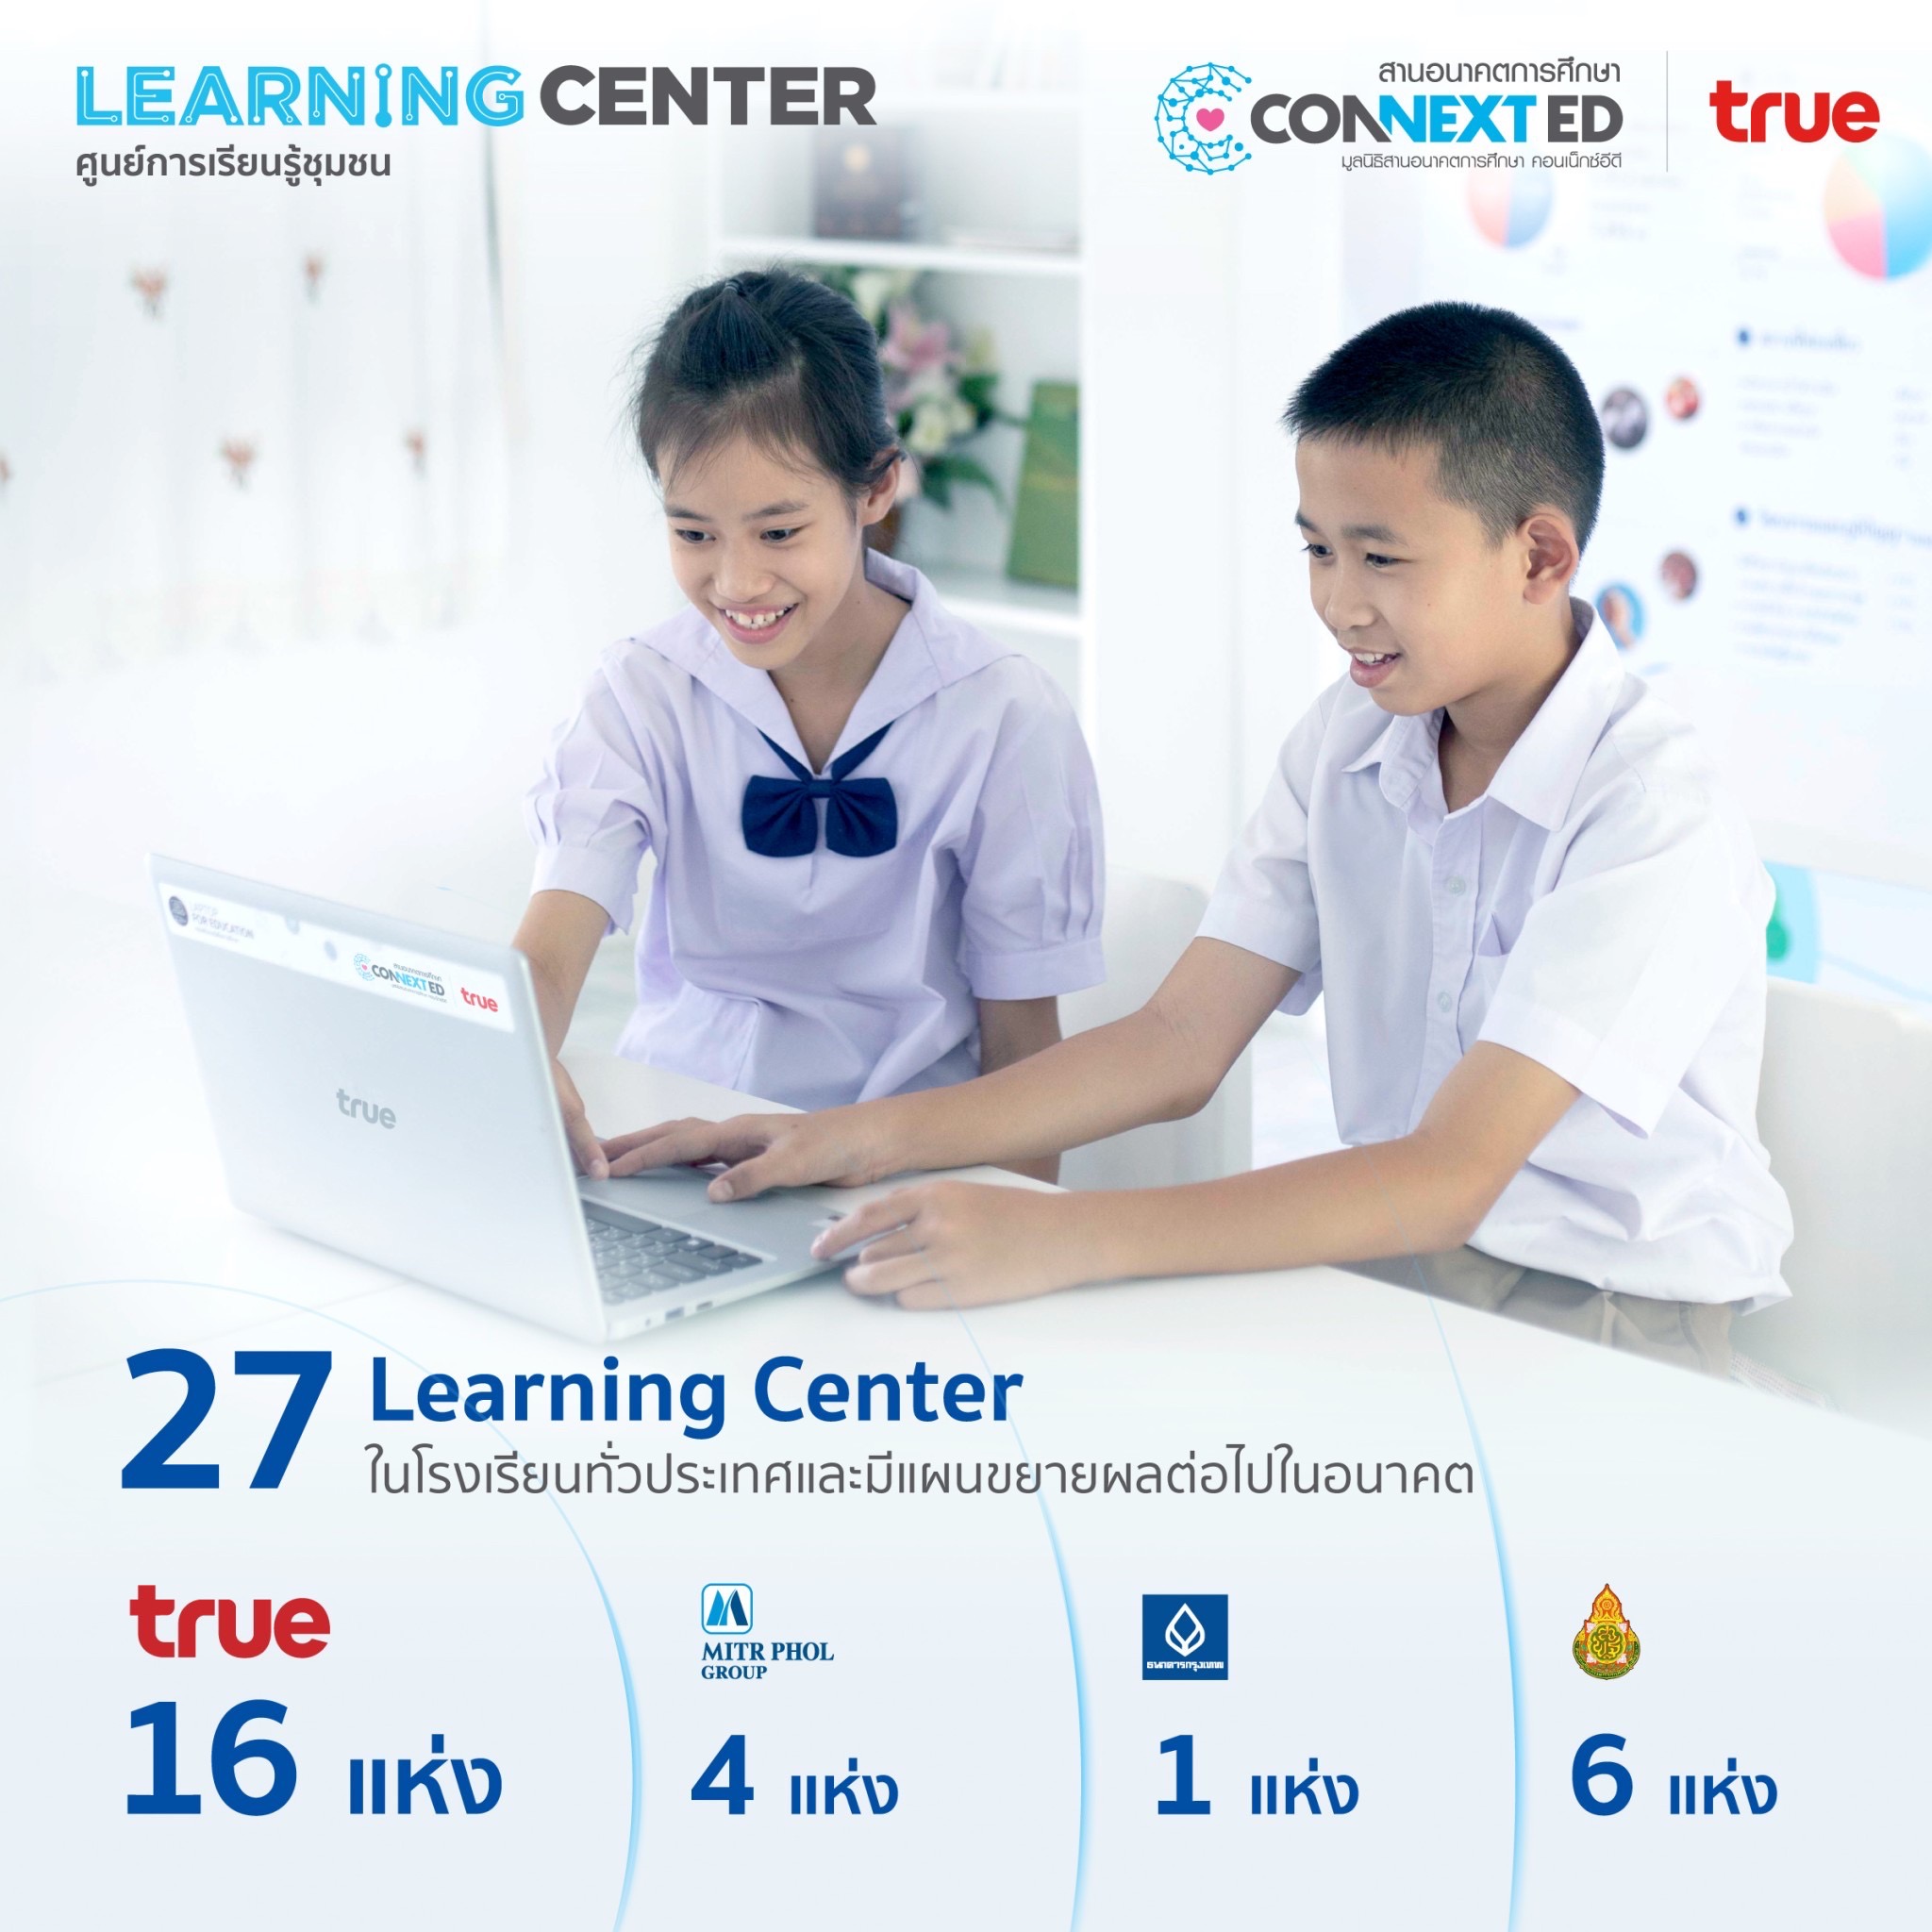 สร้างโอกาสพัฒนา ค้นพบสิ่งใหม่ ไปกับศูนย์ Learning Center ทรู เร่งขับเคลื่อนการศึกษา หนุนเด็กไทยรักการเรียนรู้ตลอดชีวิต 